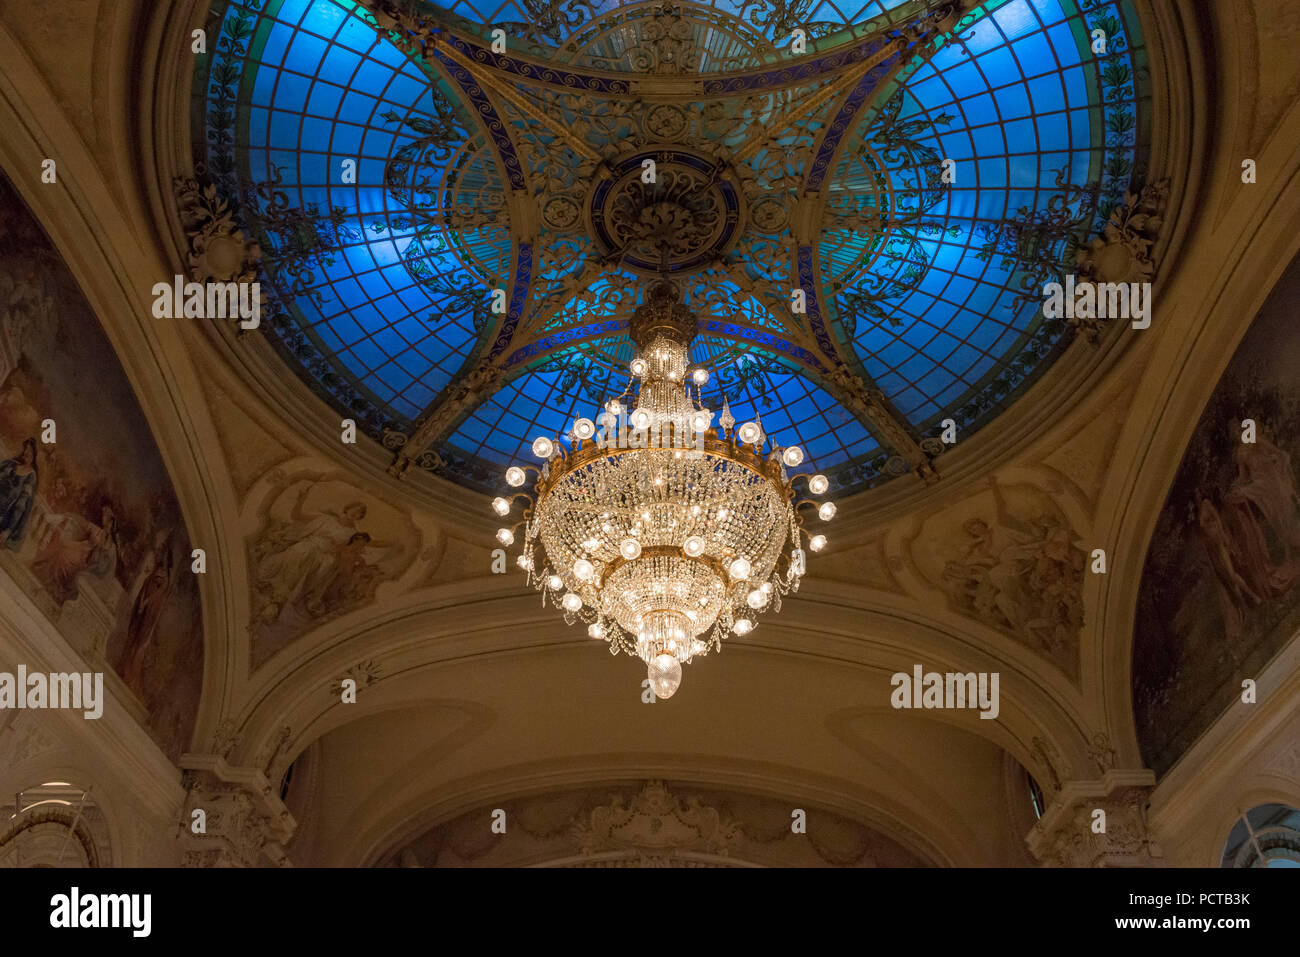 Decke Kuppel im Ballsaal, 5-Sterne Luxushotel Grandhotel "Montreux Palace",  Montreux, Genfer See, Kanton Waadt, West Switzerland, Schweiz  Stockfotografie - Alamy